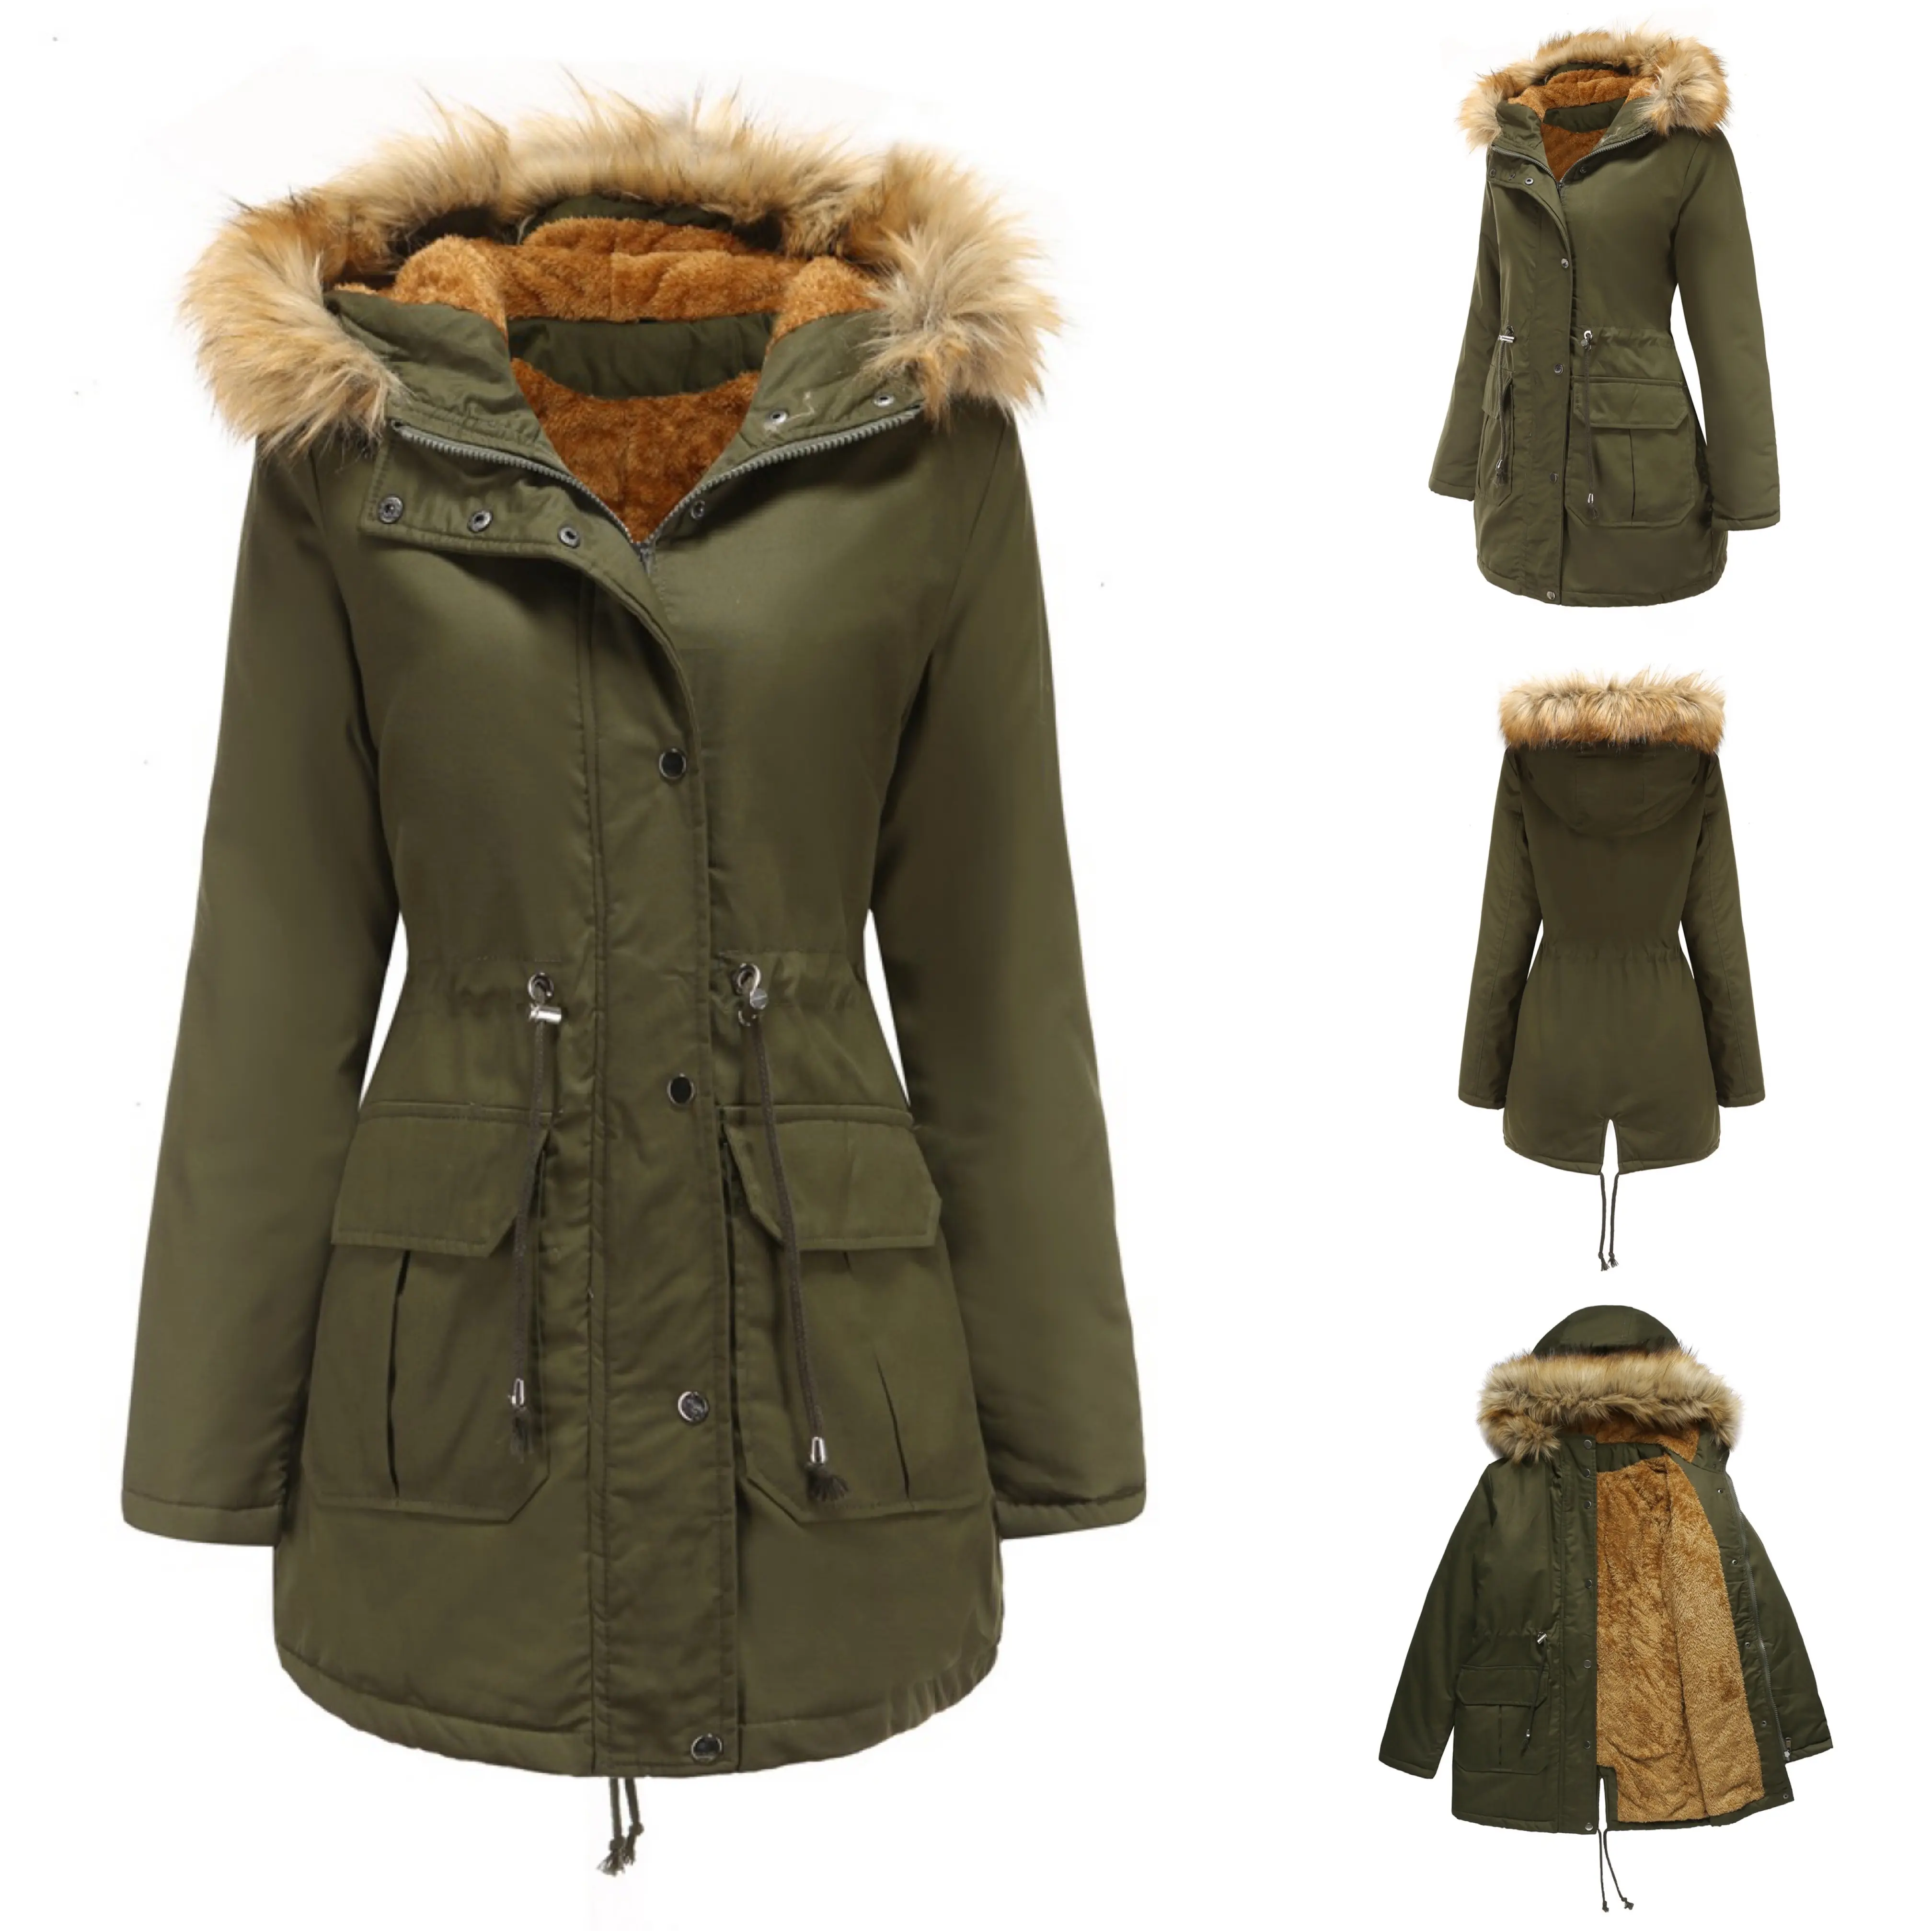 Kış kadın sıcak pamuklu ceket artı kadife kapüşonlu kürk yaka ceket 2020 sıcak satış artı boyutu kalın düz renk moda palto